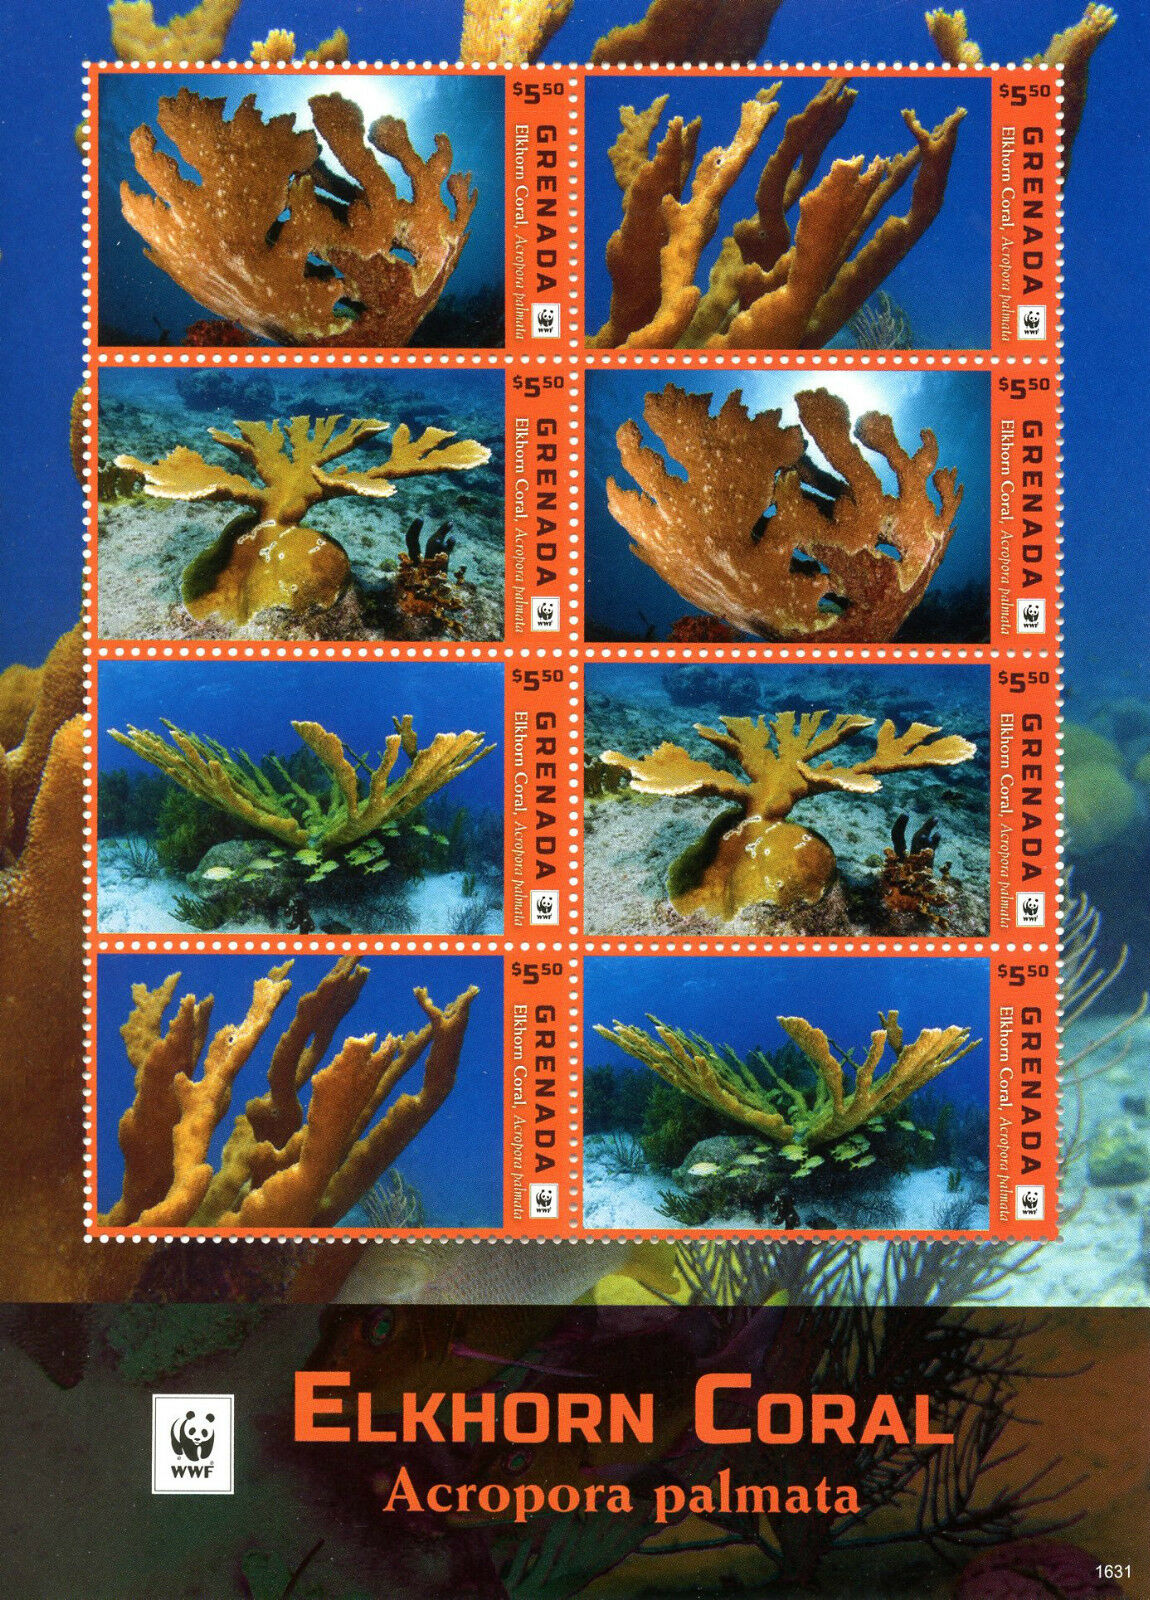 Grenada 2016 MNH Elkhorn Coral WWF 8v M/S Corals Marine Stamps